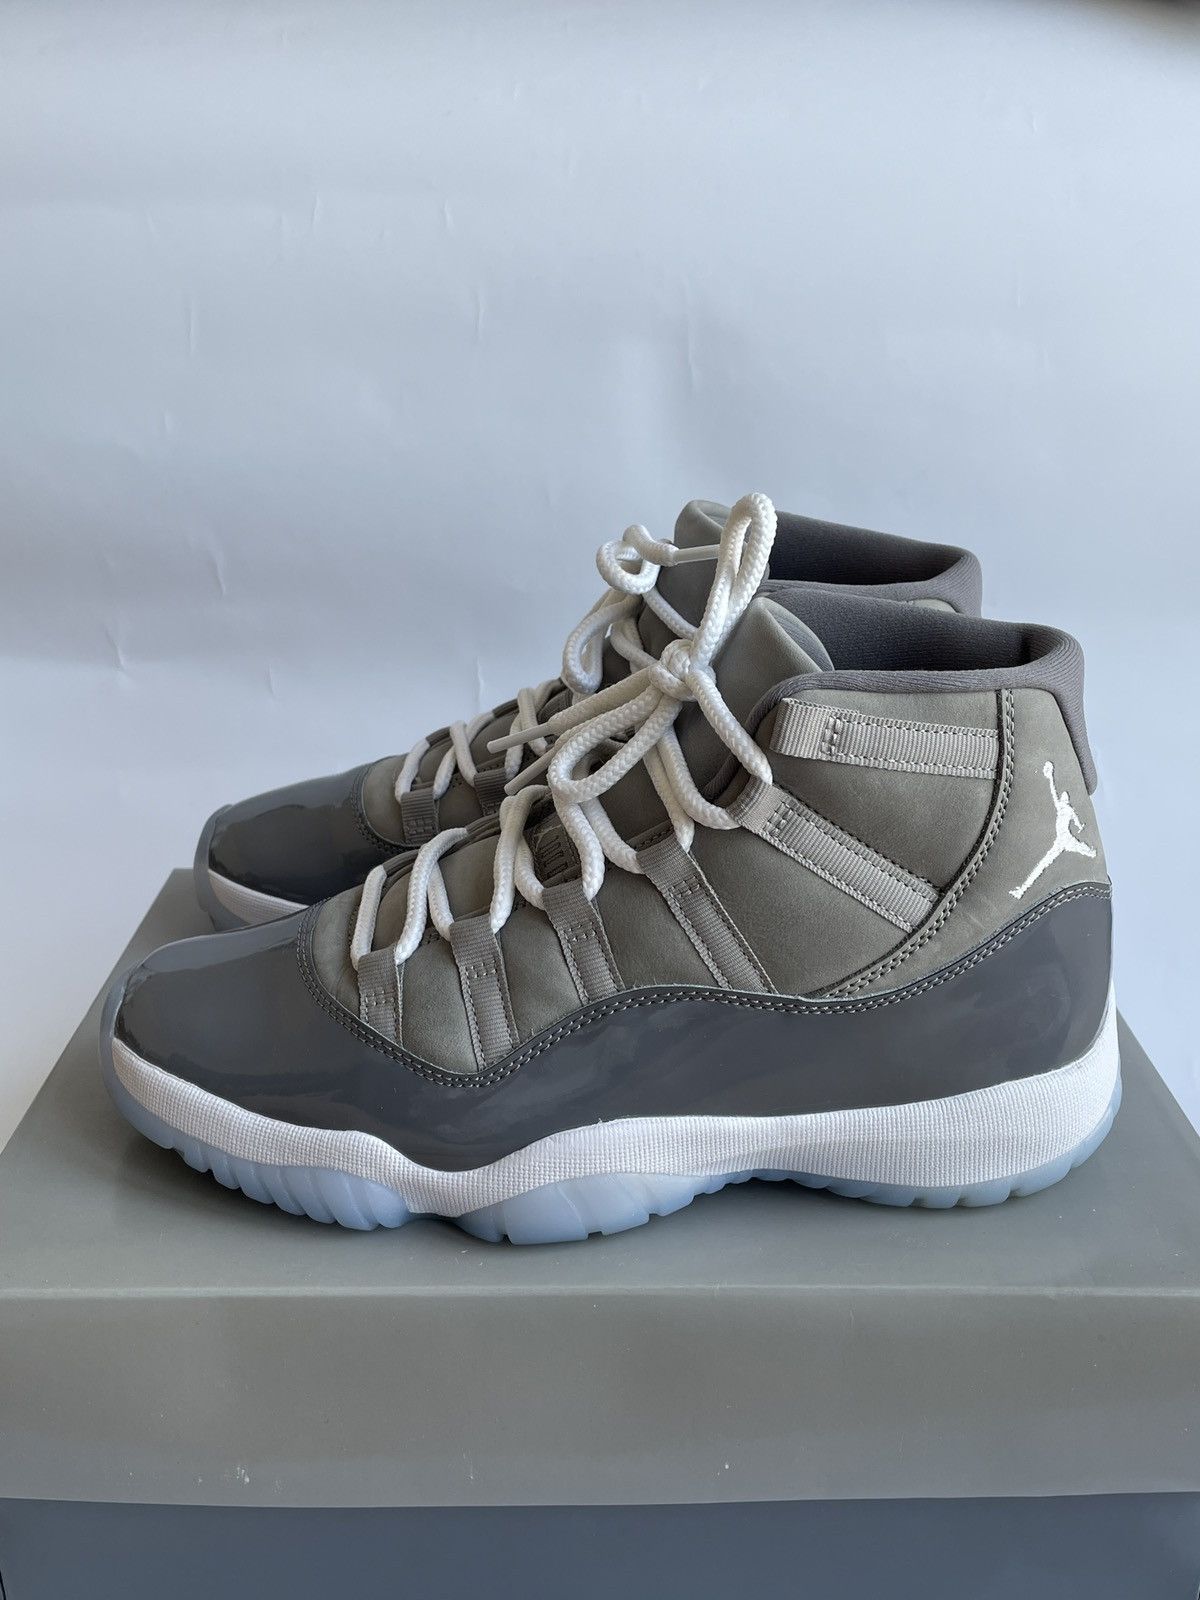 Pre-owned Jordan Nike Air Jordan 11 Retro Cool Grey Bred Off White Shoes